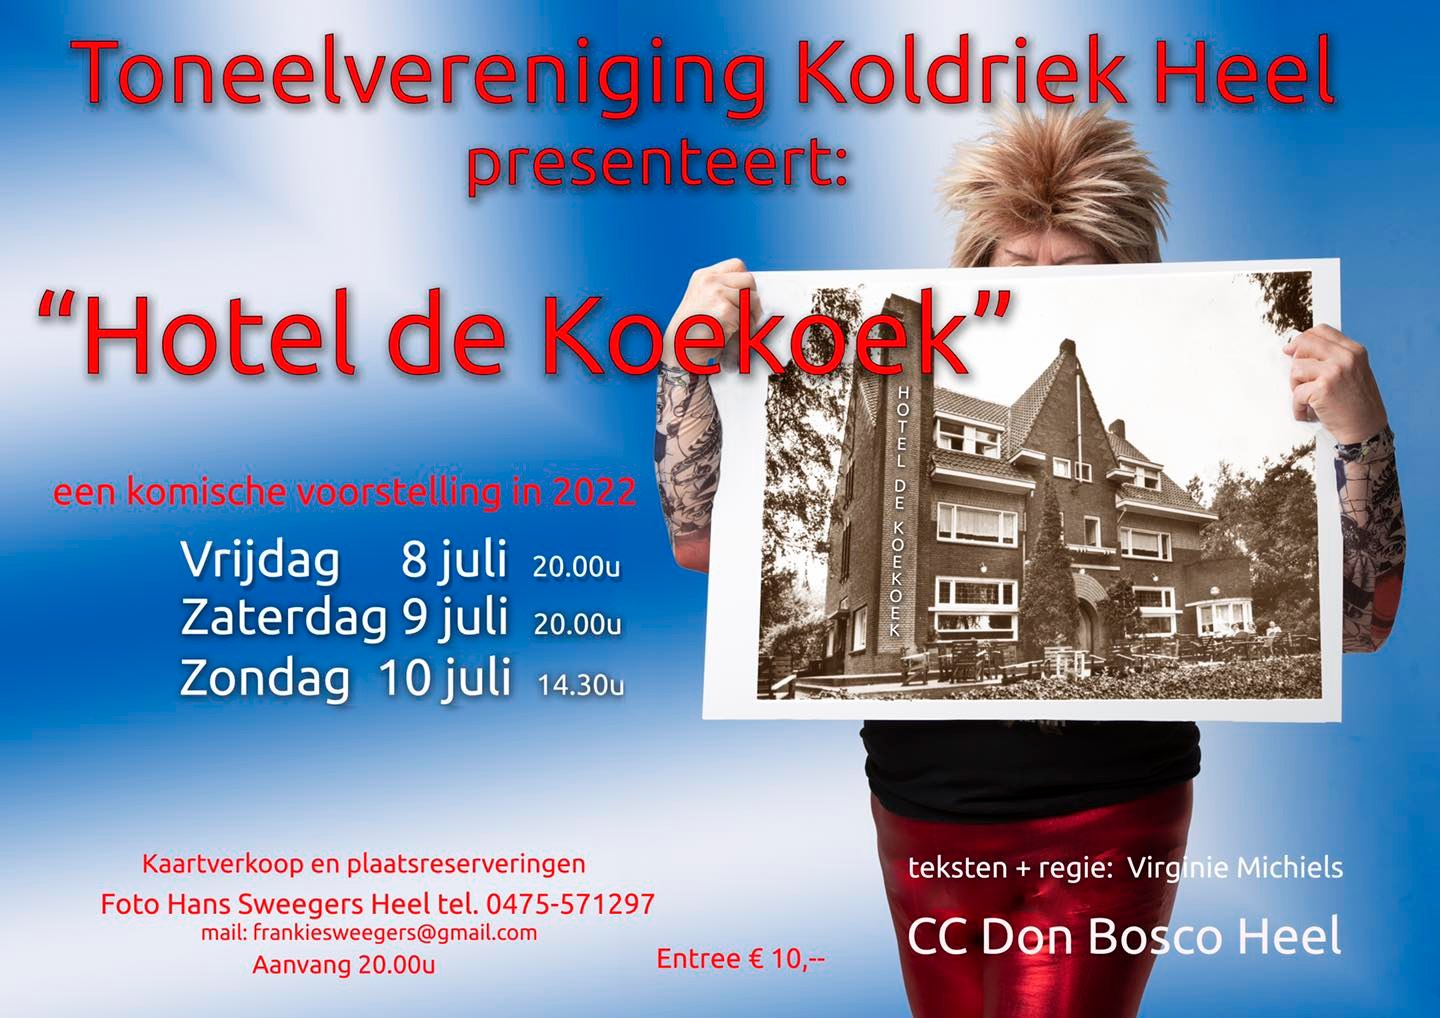 affiche-koldriek-hotel-de-hoekoek